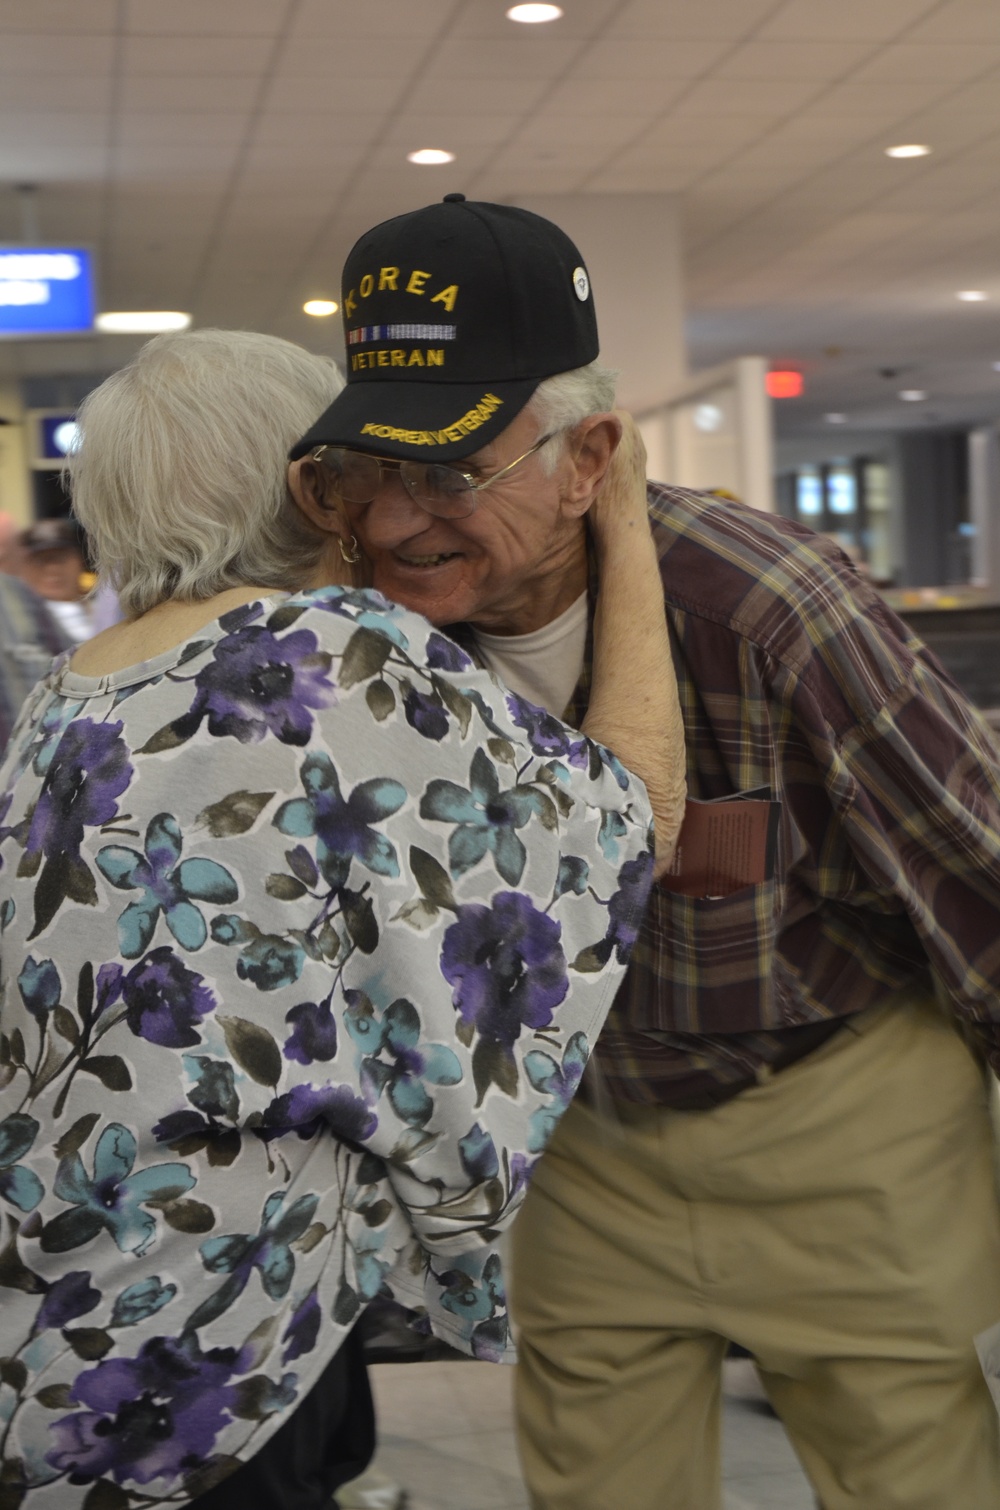 World War II veterans return home